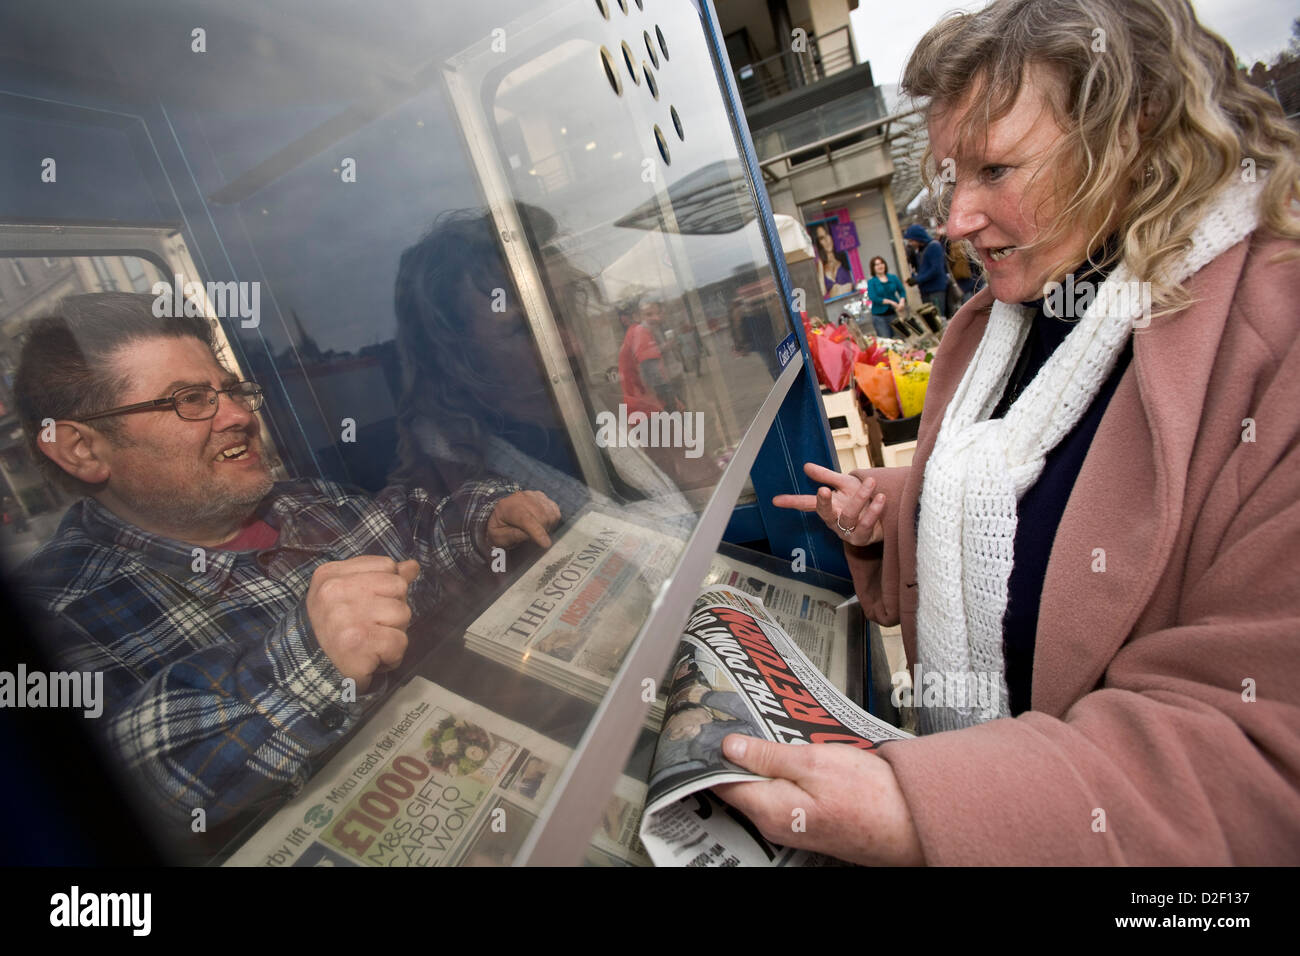 La vente du vendeur l'écossais d'Édimbourg et de journaux du soir News un stand sur Princes Street, Édimbourg Banque D'Images